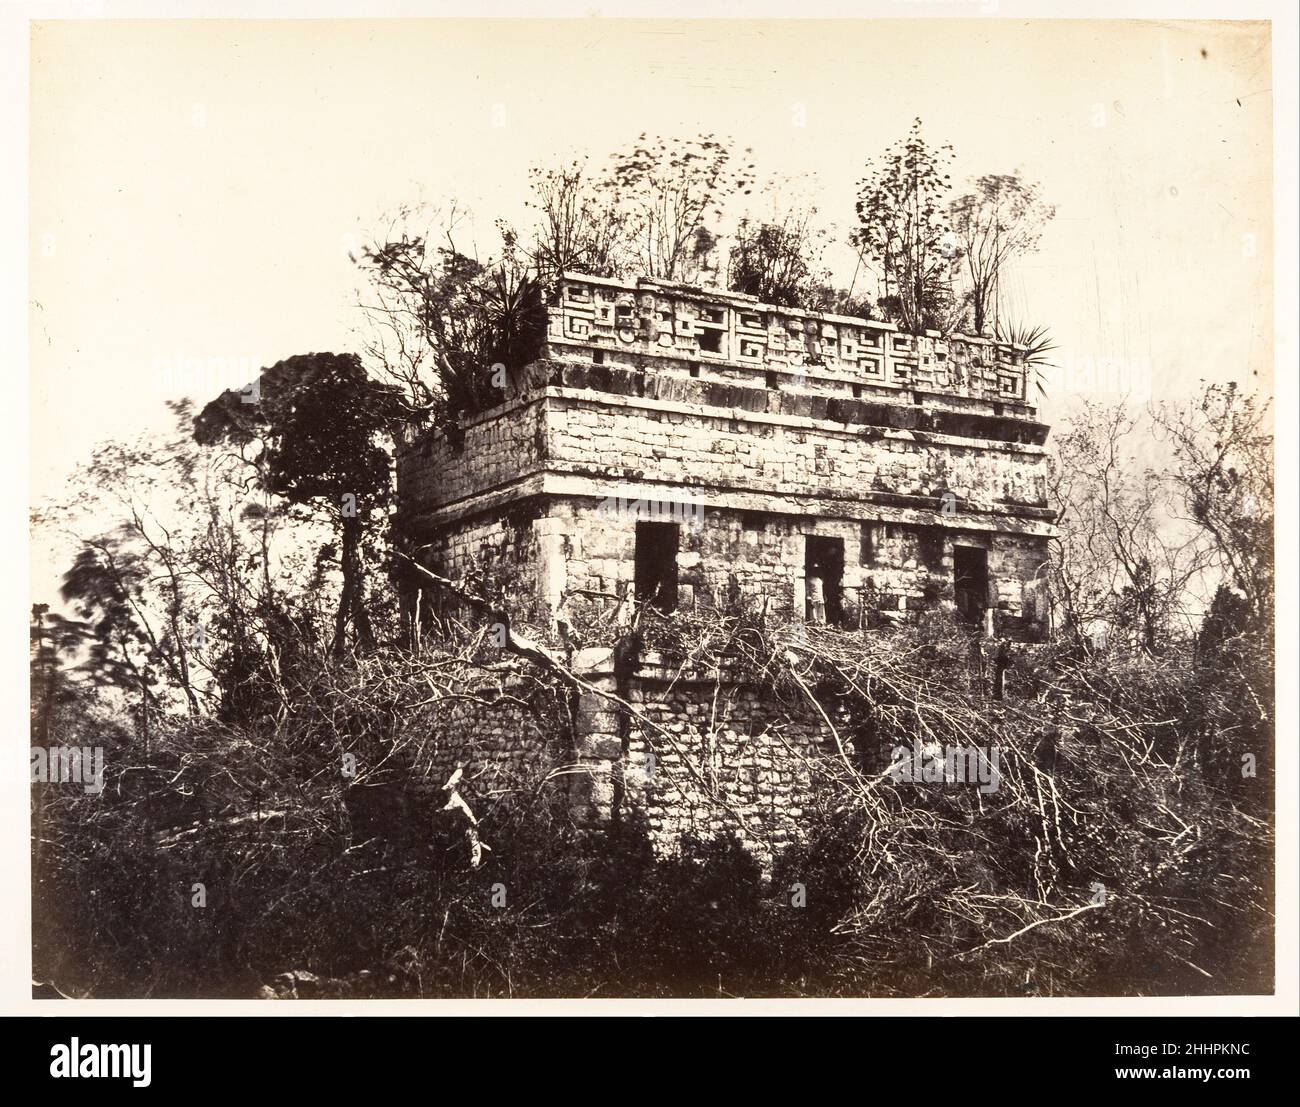 La prison, à Chichen-Itza 1857–89 désiré Charnay le Charnay français a été l'un des premiers à photographier les magnifiques ruines mayas du Mexique.L'archéologue français-aventurier a gagné une renommée considérable avec la publication de ses photographies et un compte rendu de ses voyages intitulé Cités et ruines américaines: Mitla, Palencé, Izamal, Chichen-Itza, Uxmal (1862-63).Dans cette assiette de l'album, Charnay a photographié un bâtiment qu'il a décrit comme une 'prison' émergeant de la jungle à Chichén-Itzá.Construit à la fin du huitième ou du neuvième siècle, ce bâtiment de temple a été construit dans un style architectural complexe ca Banque D'Images